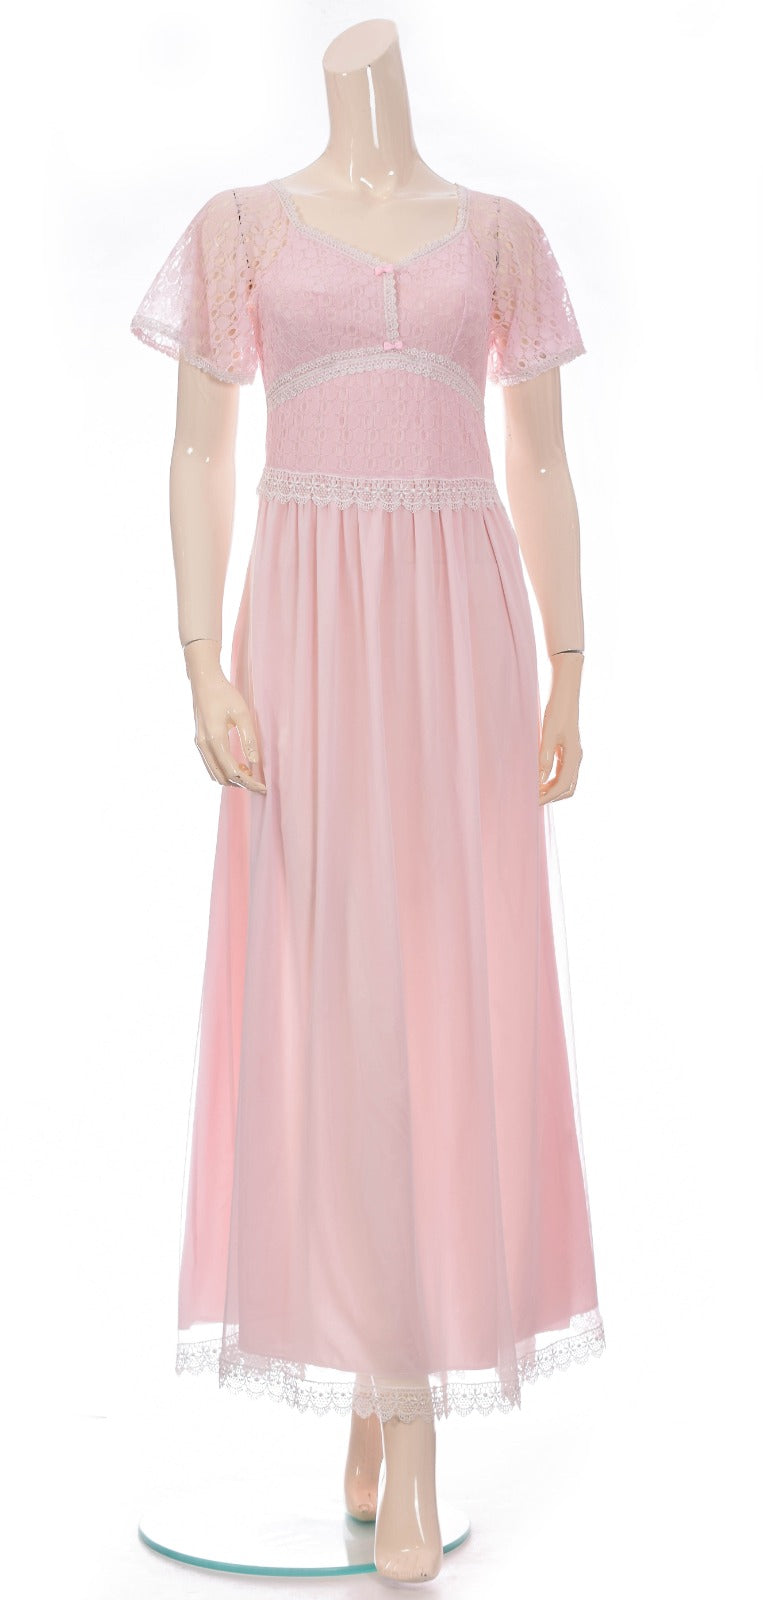 Royal Lace & Chiffon Night Dress - Light Pink Dress Coco Box 